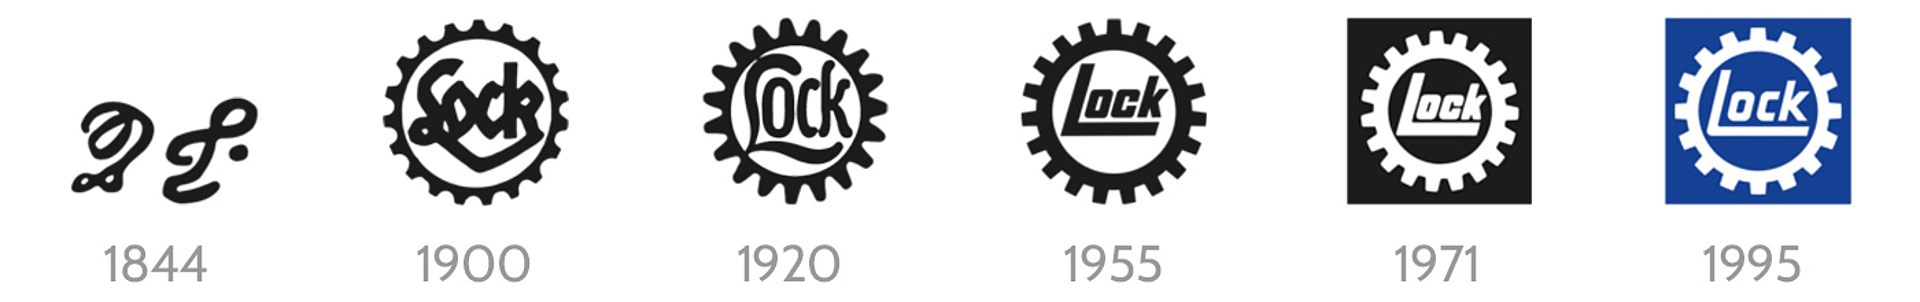 LockDrives historical logo development